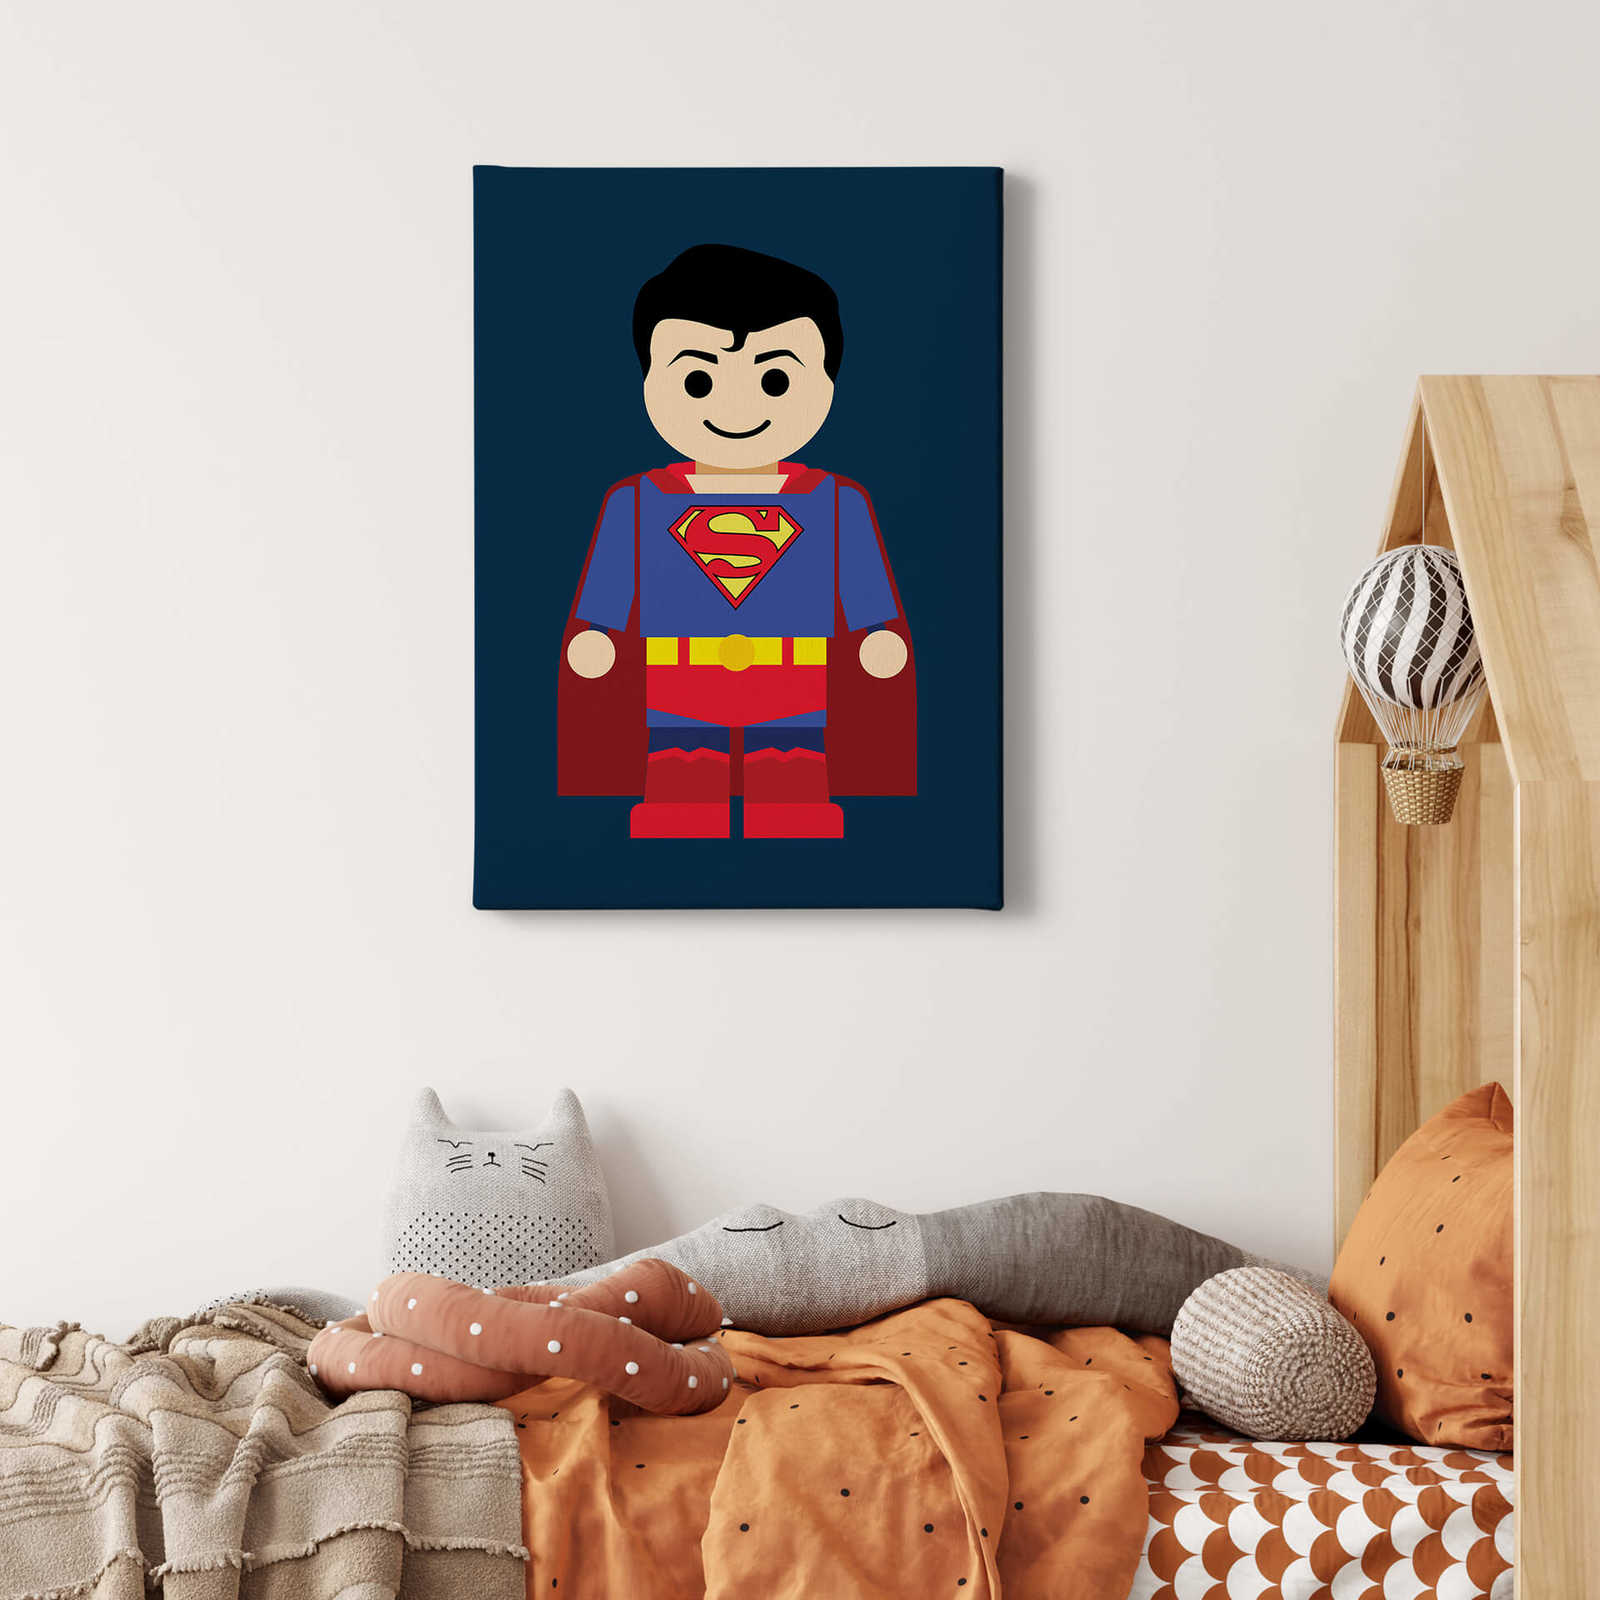             Cuadro infantil Superman by Gomes - 0,50 m x 0,70 m
        